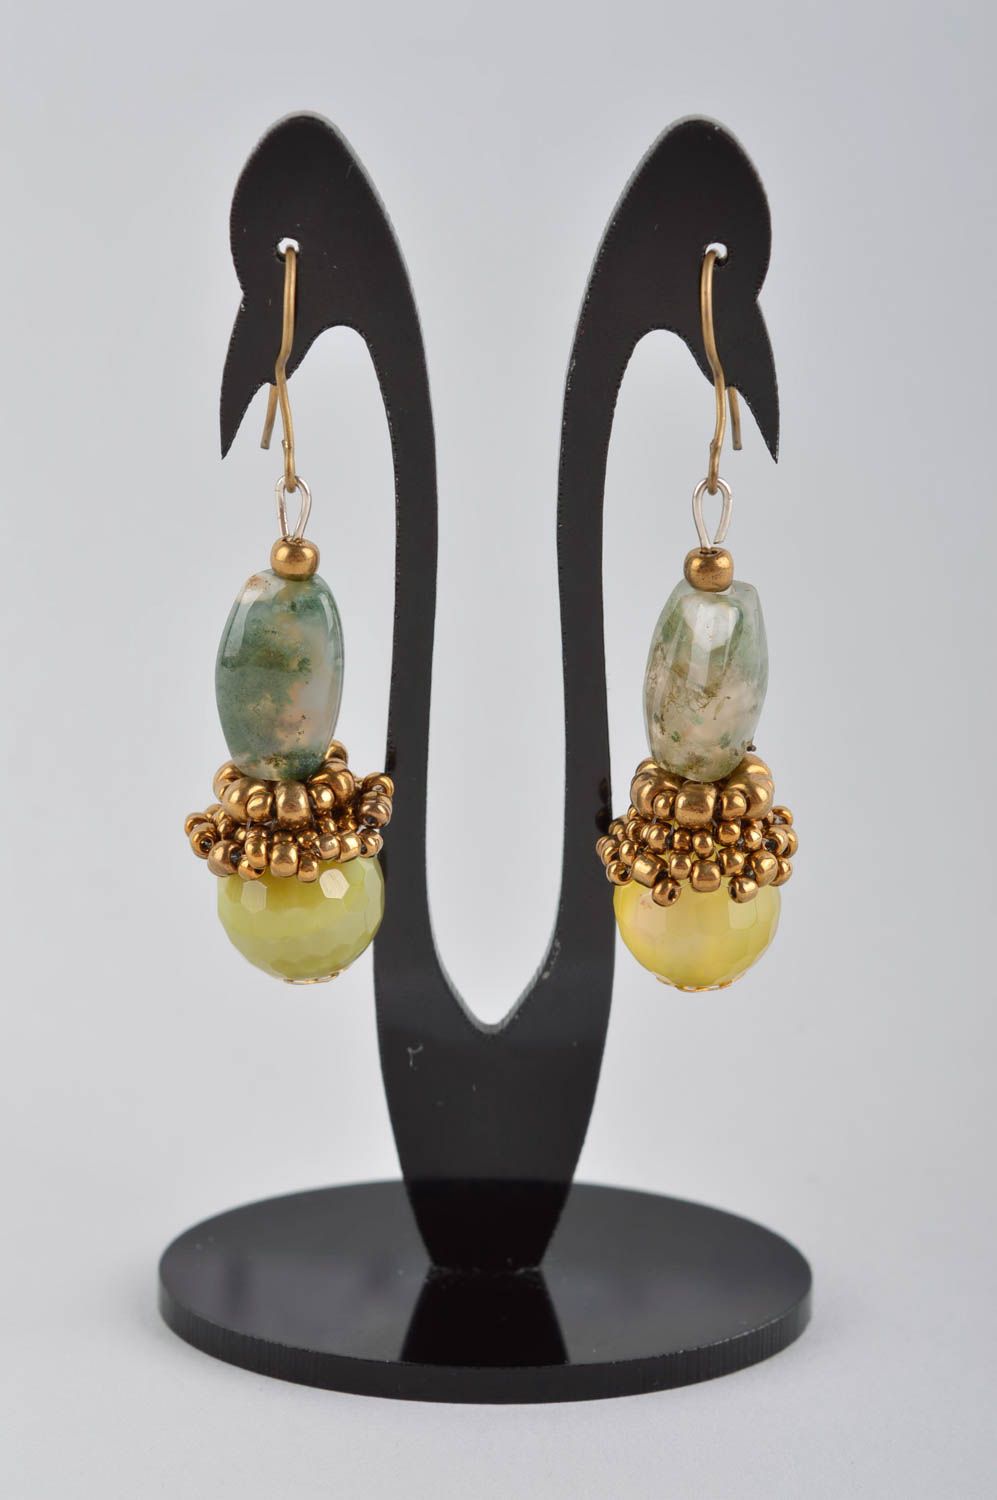 Handmade earrings stylish earrings designer jewelry women accessories gift ideas photo 2